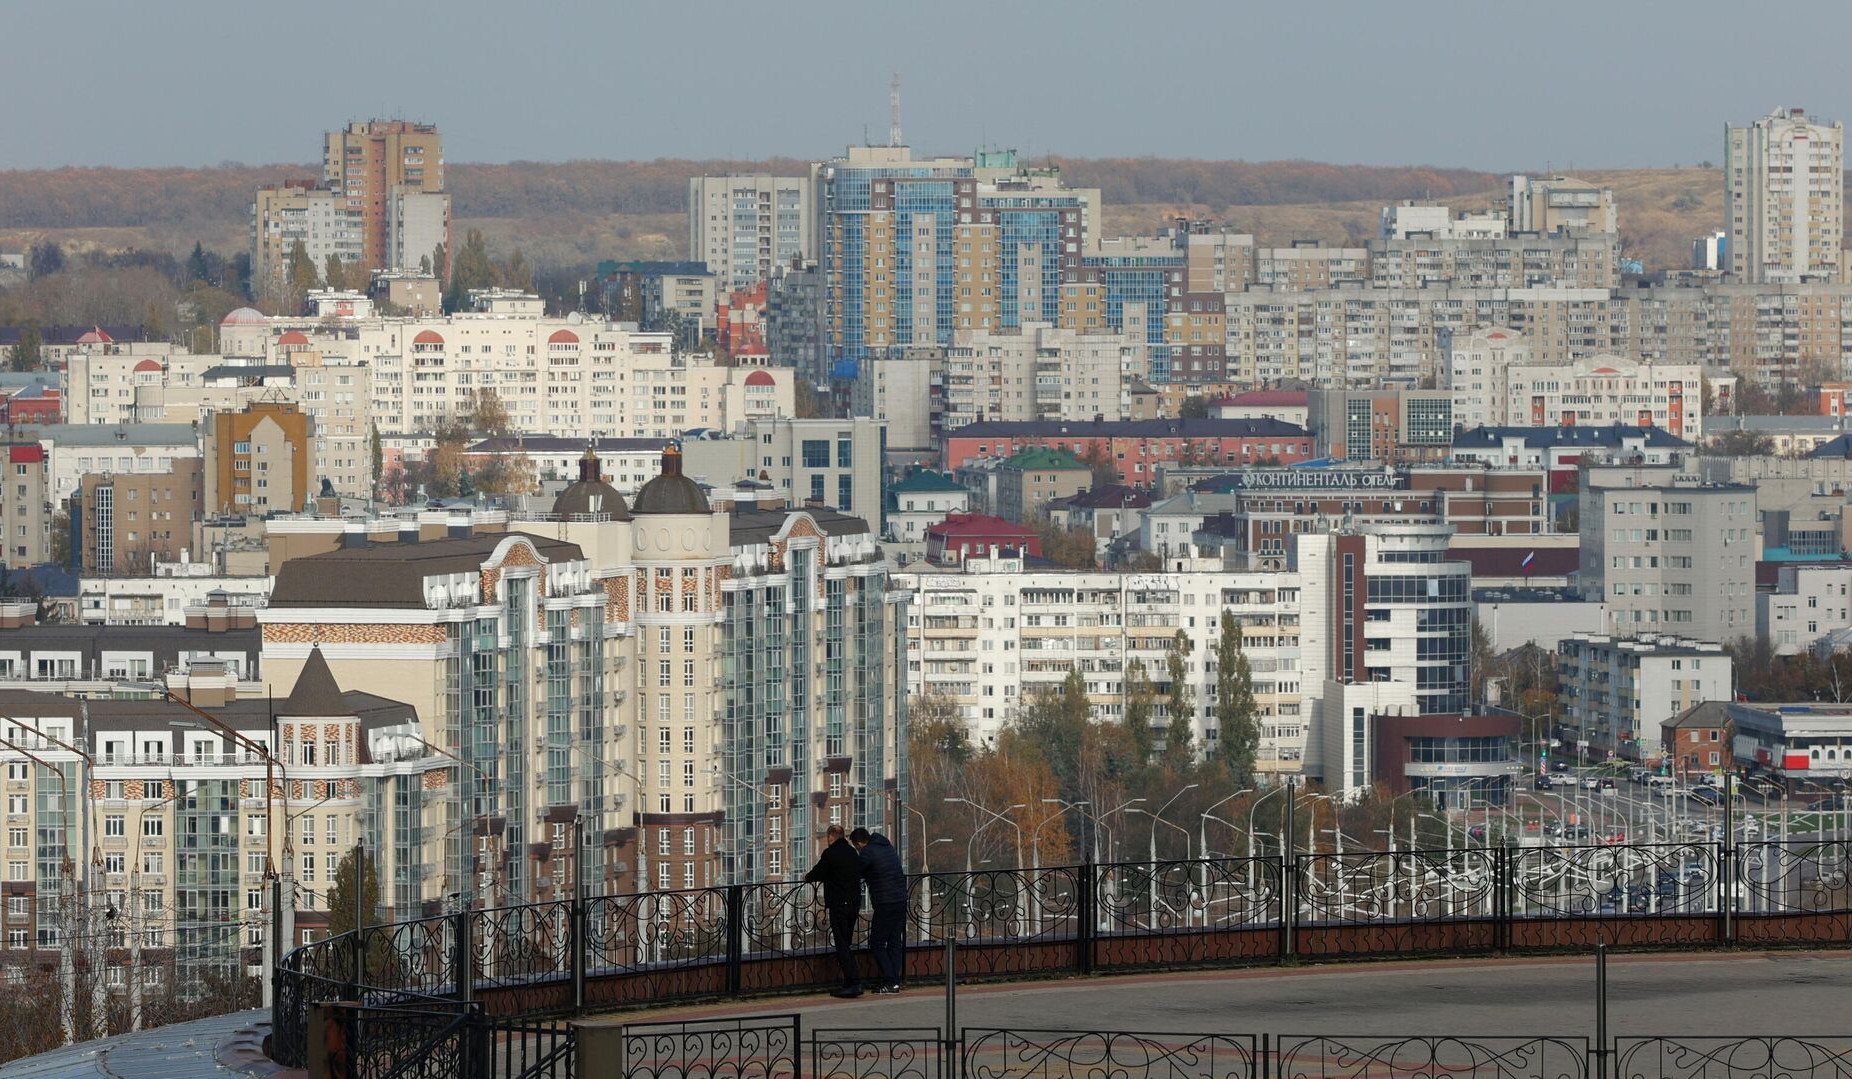 Ռուսաստանը հայտնել է Բելգորոդի շրջանում ուկրաինական ուժերի հարվածի հետևանքով խաղաղ բնակչի զոհվելու մասին